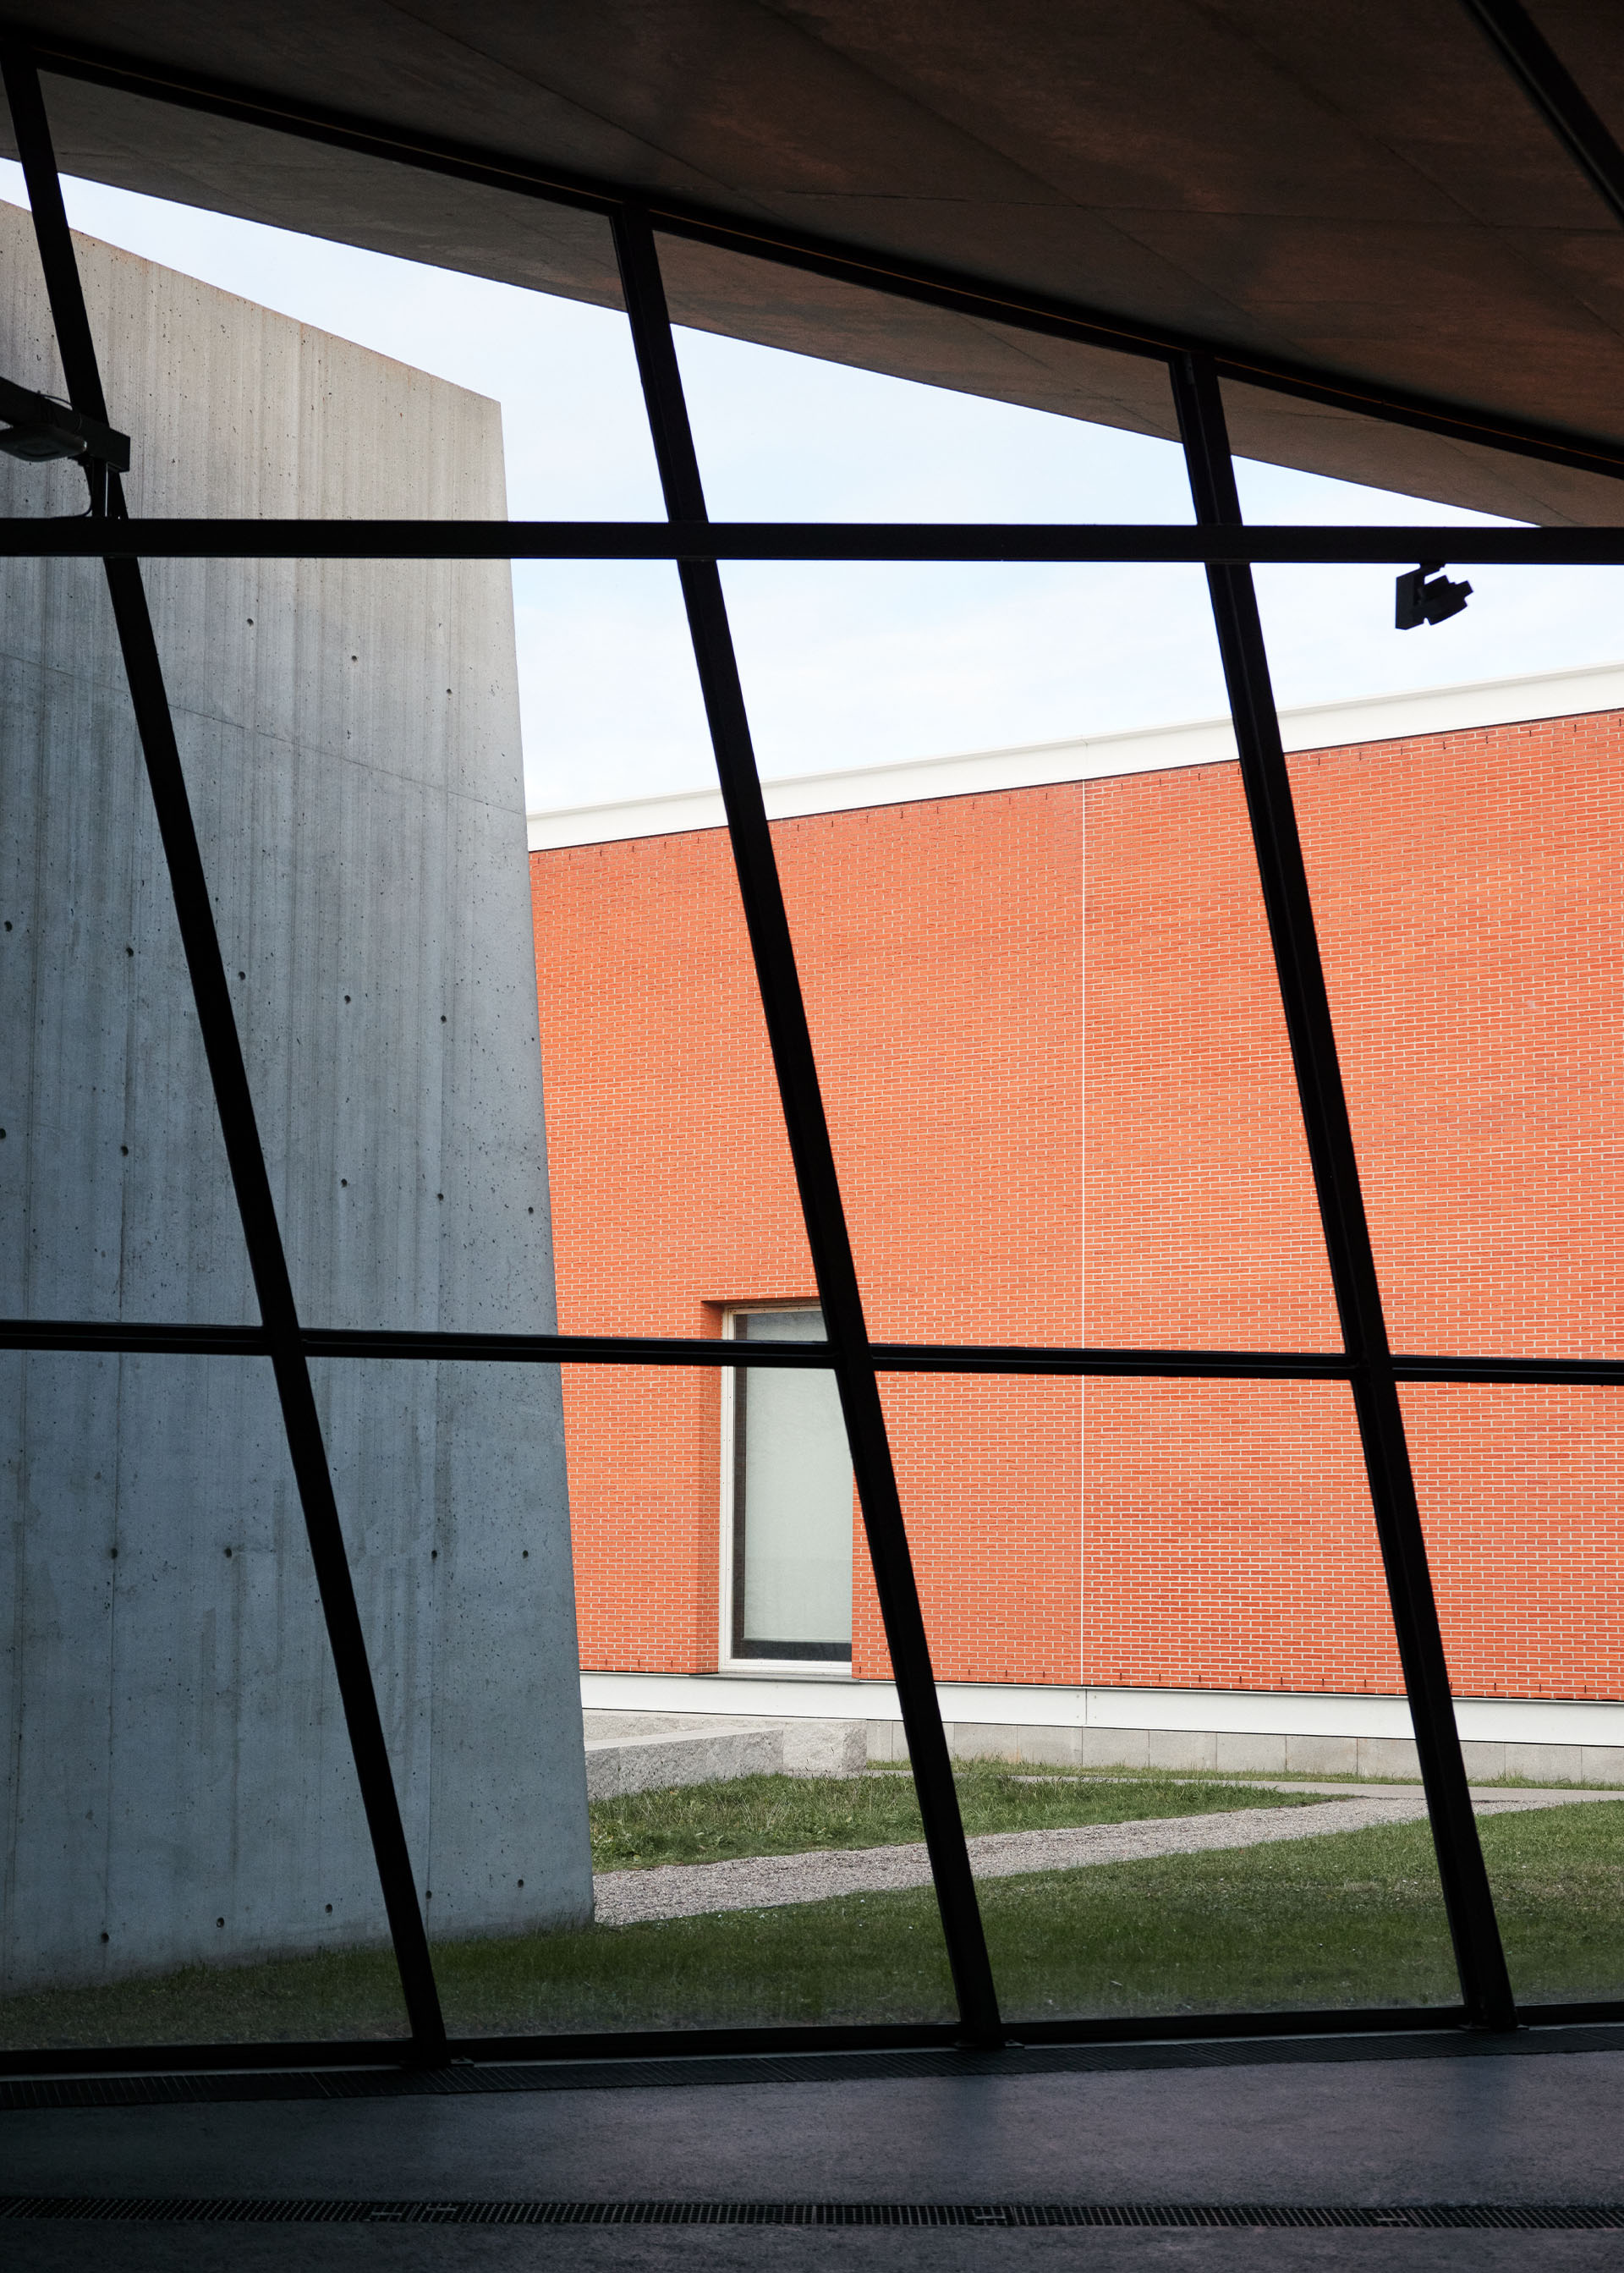 View through a glass facade to a brick building.